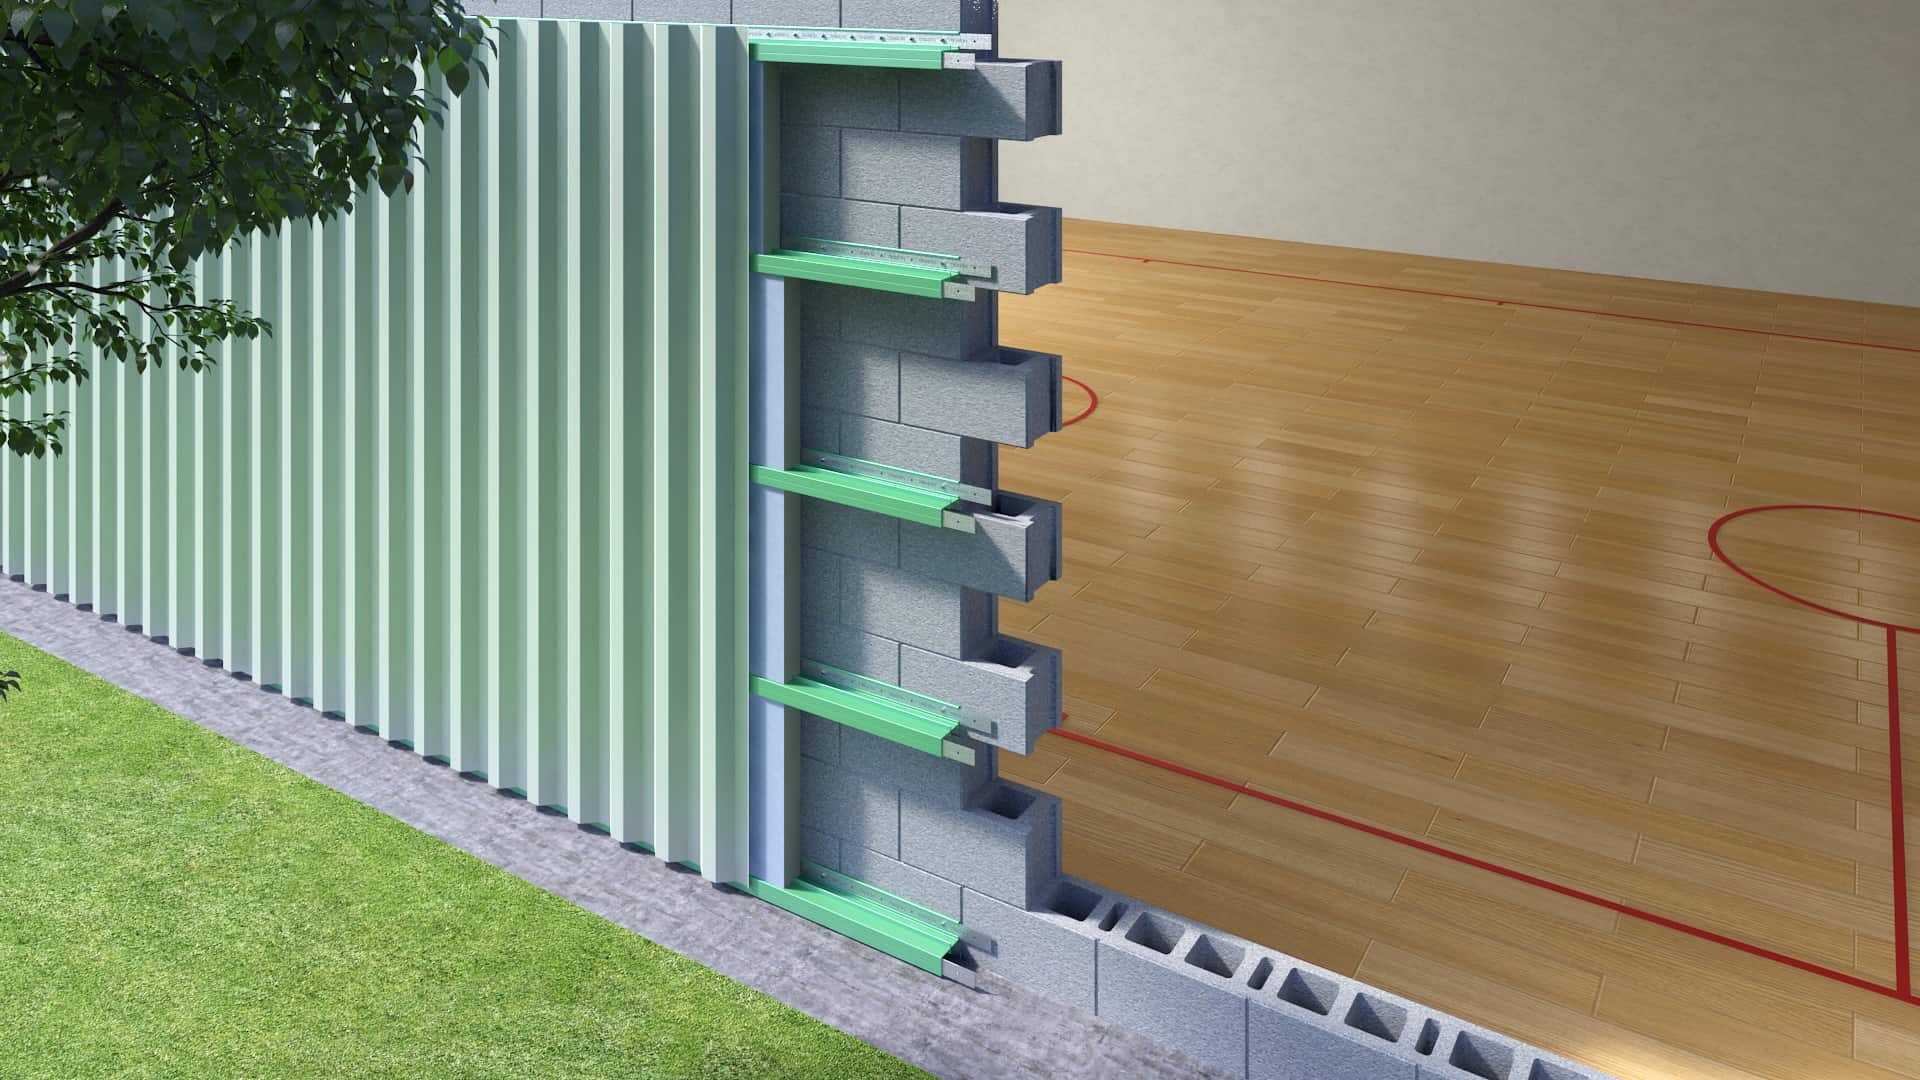 https://greengirt.com/wp-content/uploads/2018/08/Vertical-Siding-on-CMU-Wall_View_1.jpg